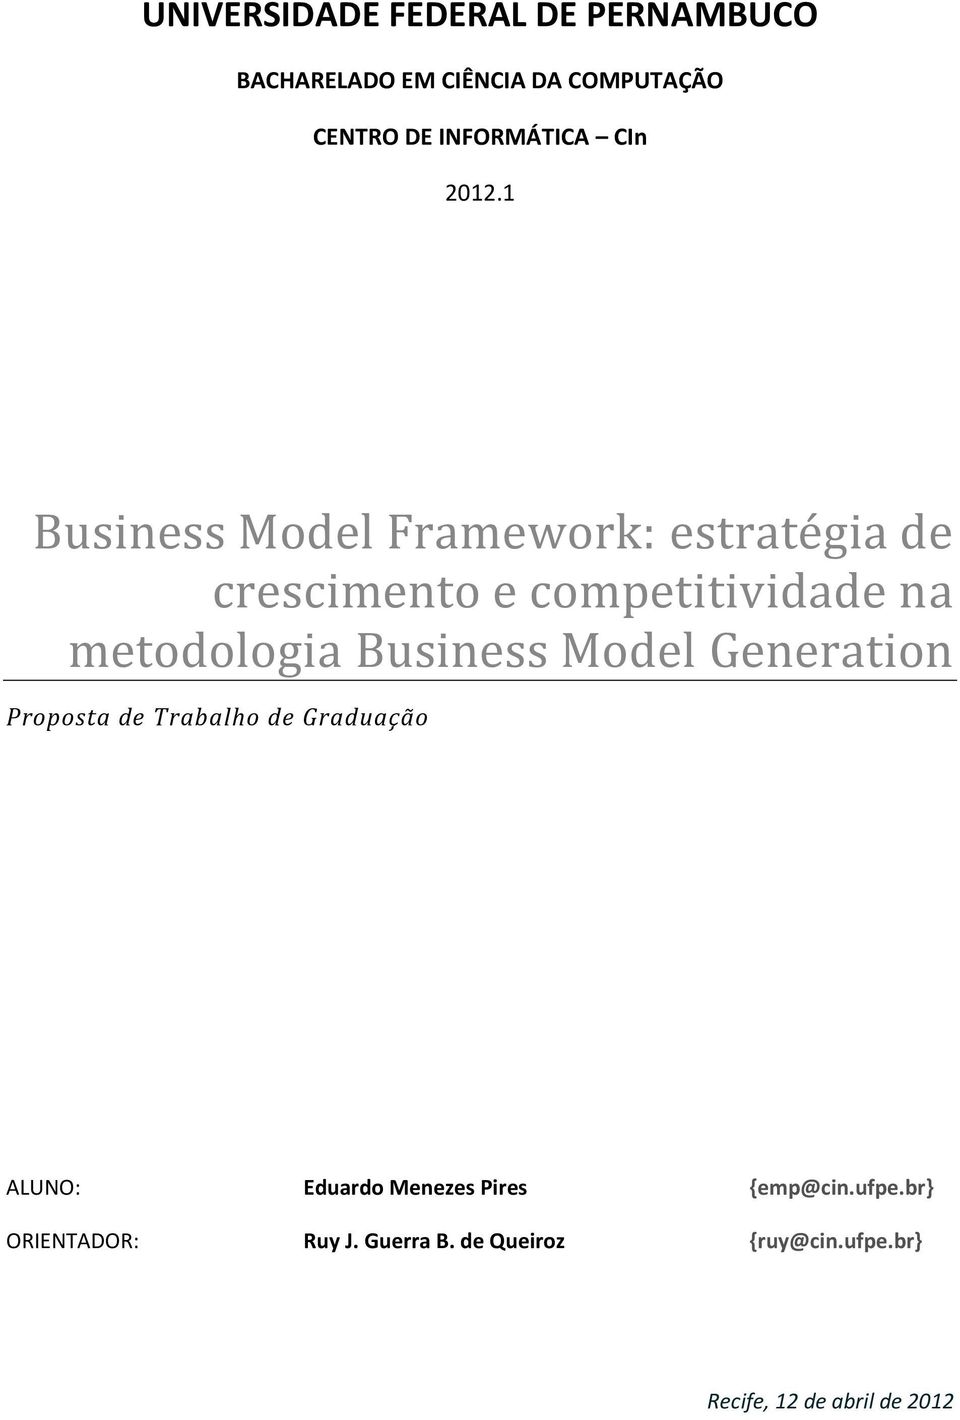 1 Business Model Framework: estratégia de crescimento e competitividade na metodologia Business